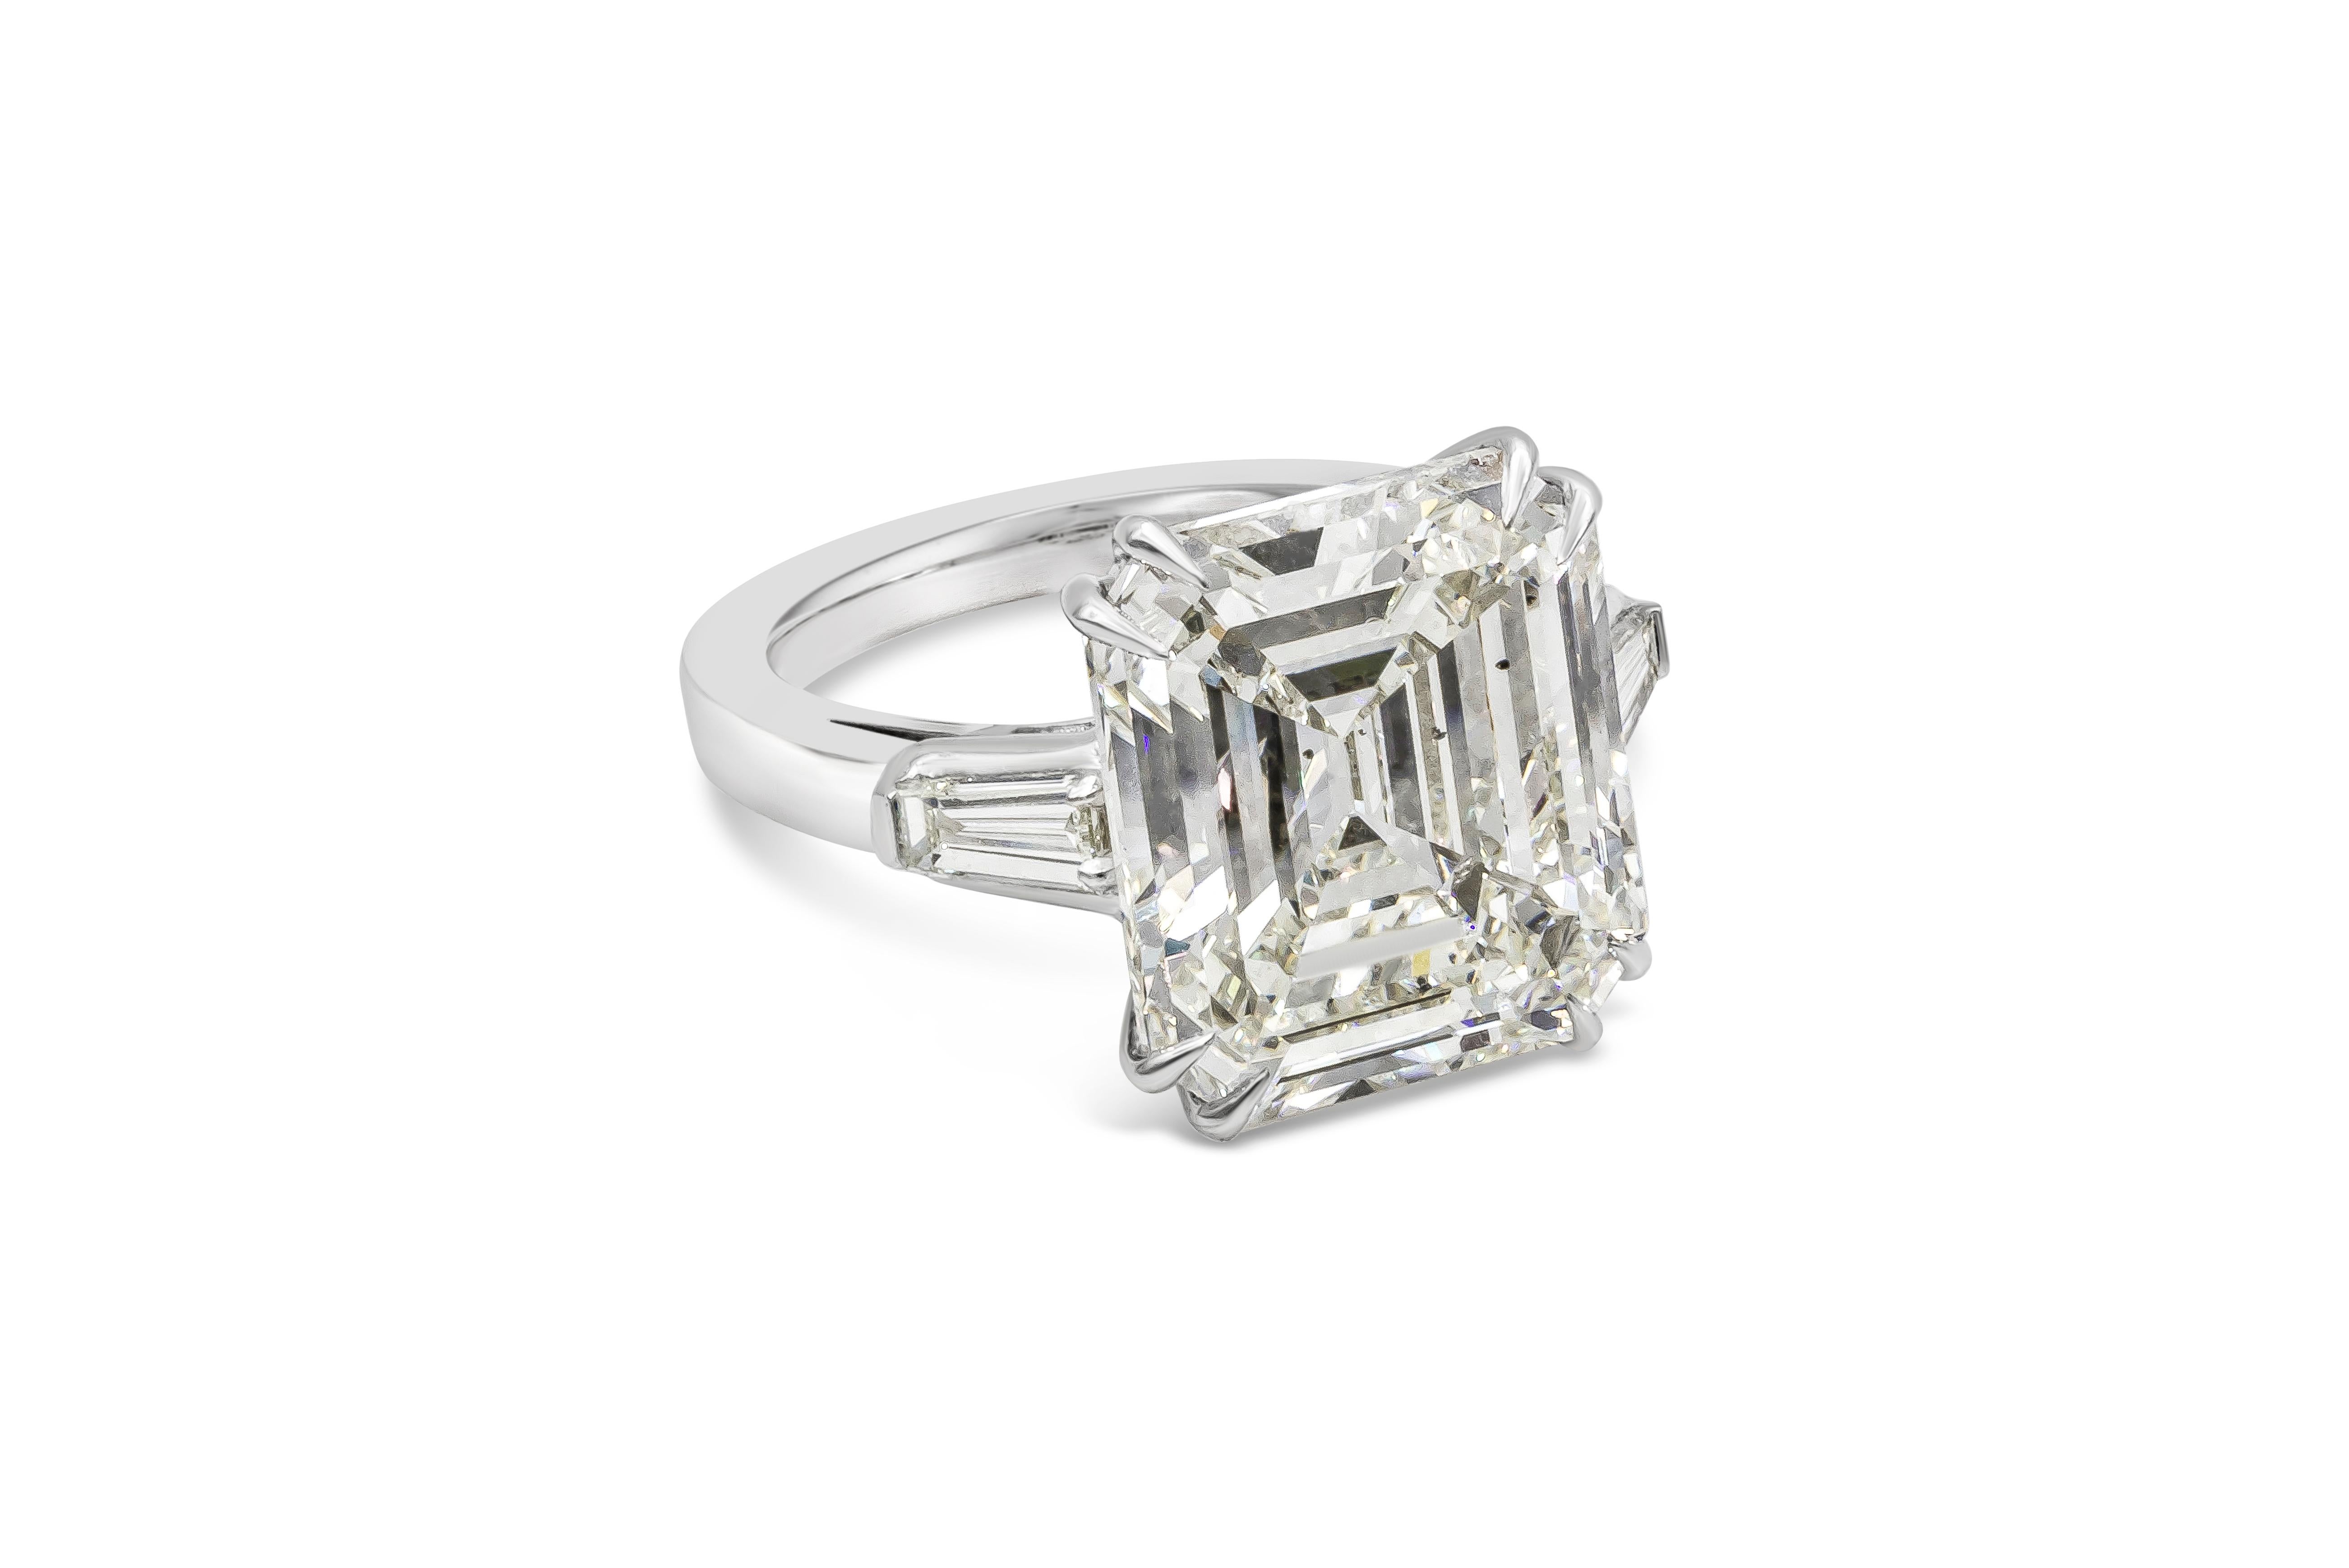 Une bague de fiançailles étonnante et classique mettant en valeur un diamant taille émeraude certifié GIA de 12,55 carats, de couleur K et de pureté SI2. Des diamants baguettes effilés, d'un poids total de 0,50 carat, sont disposés de part et